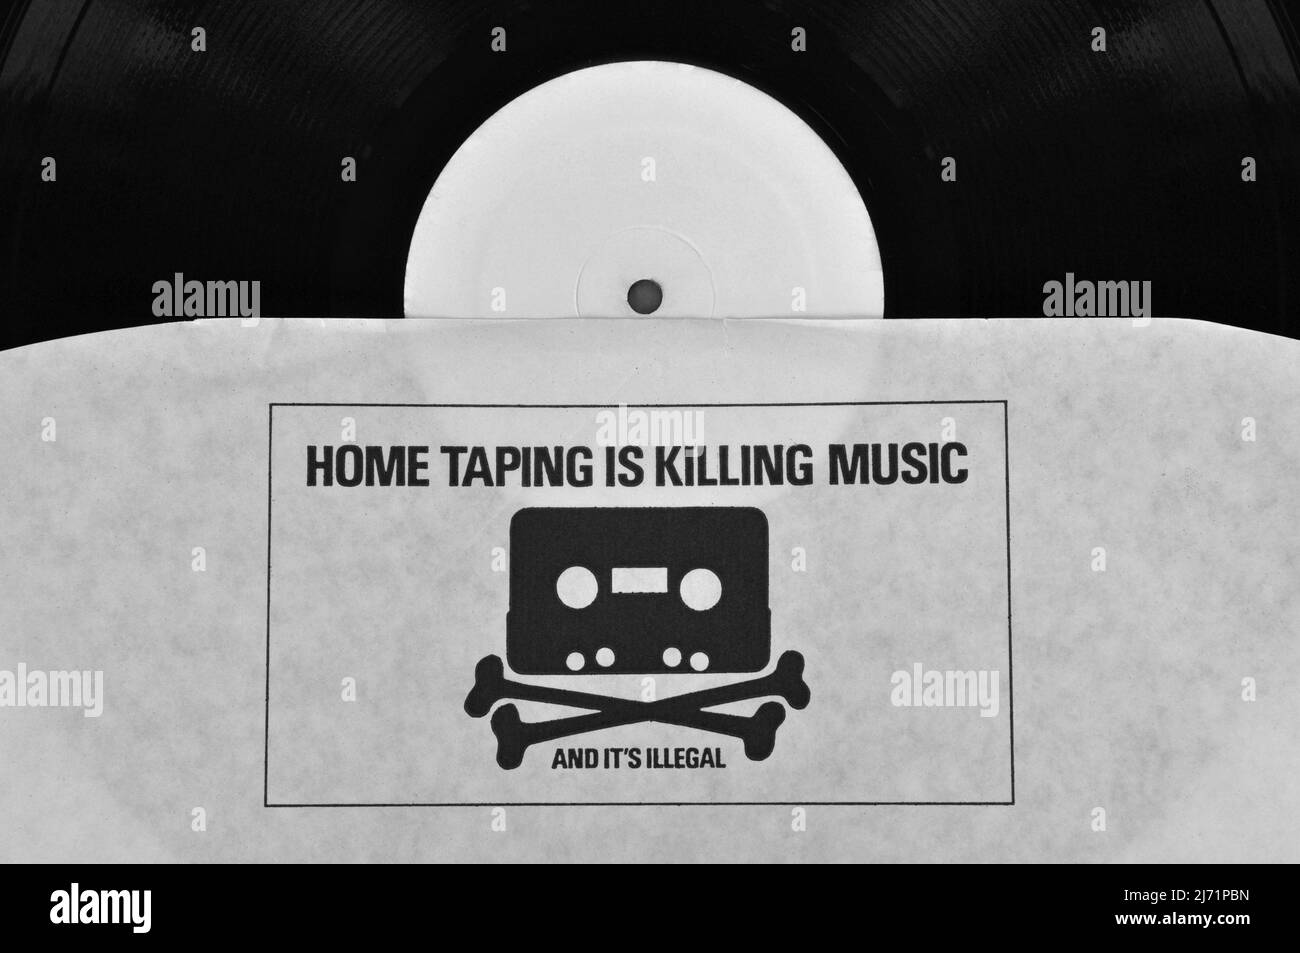 Atenas, Grecia - 1 de agosto de 2014: La grabación en casa está matando música y es ilegal 1980s contra la campaña de infracción de derechos de autor impreso en el disco de vinilo inne Foto de stock